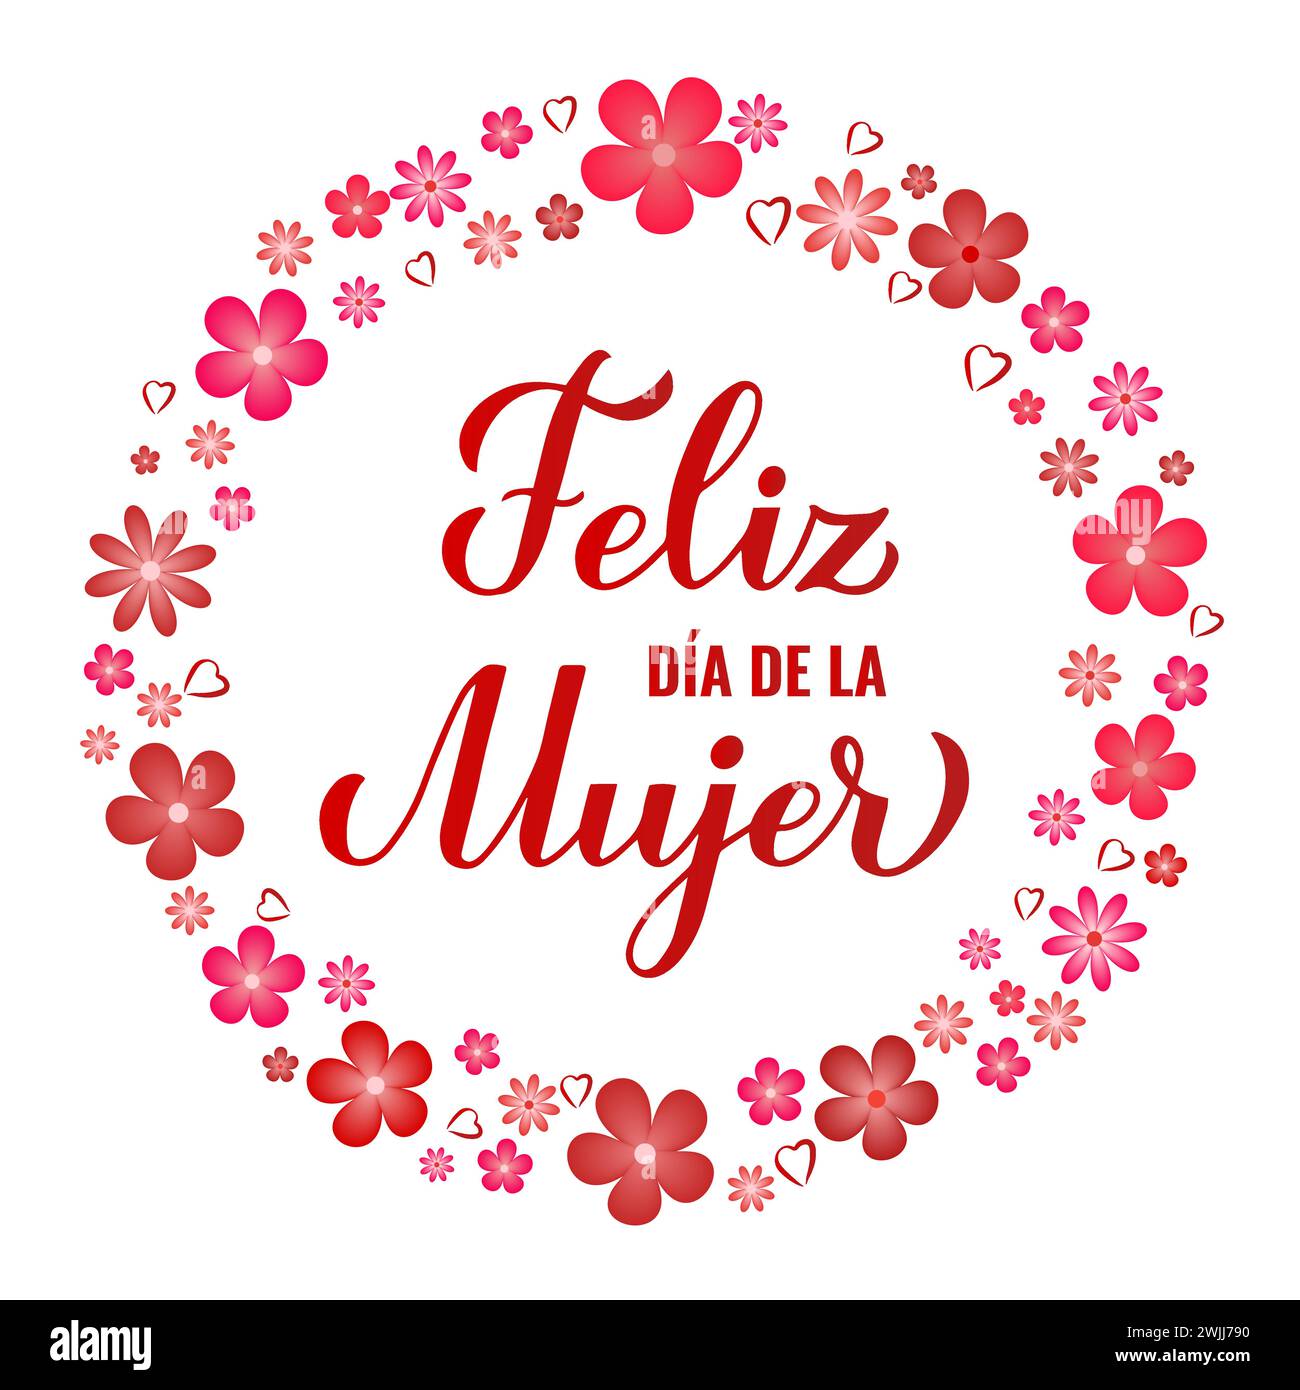 Feliz Dia de la Mujer - Happy Womens Day auf Spanisch. Kalligraphie-Handschrift mit Frühlingsblumen. Poster zur Typografie des Internationalen Frauentages. Vecto Stock Vektor